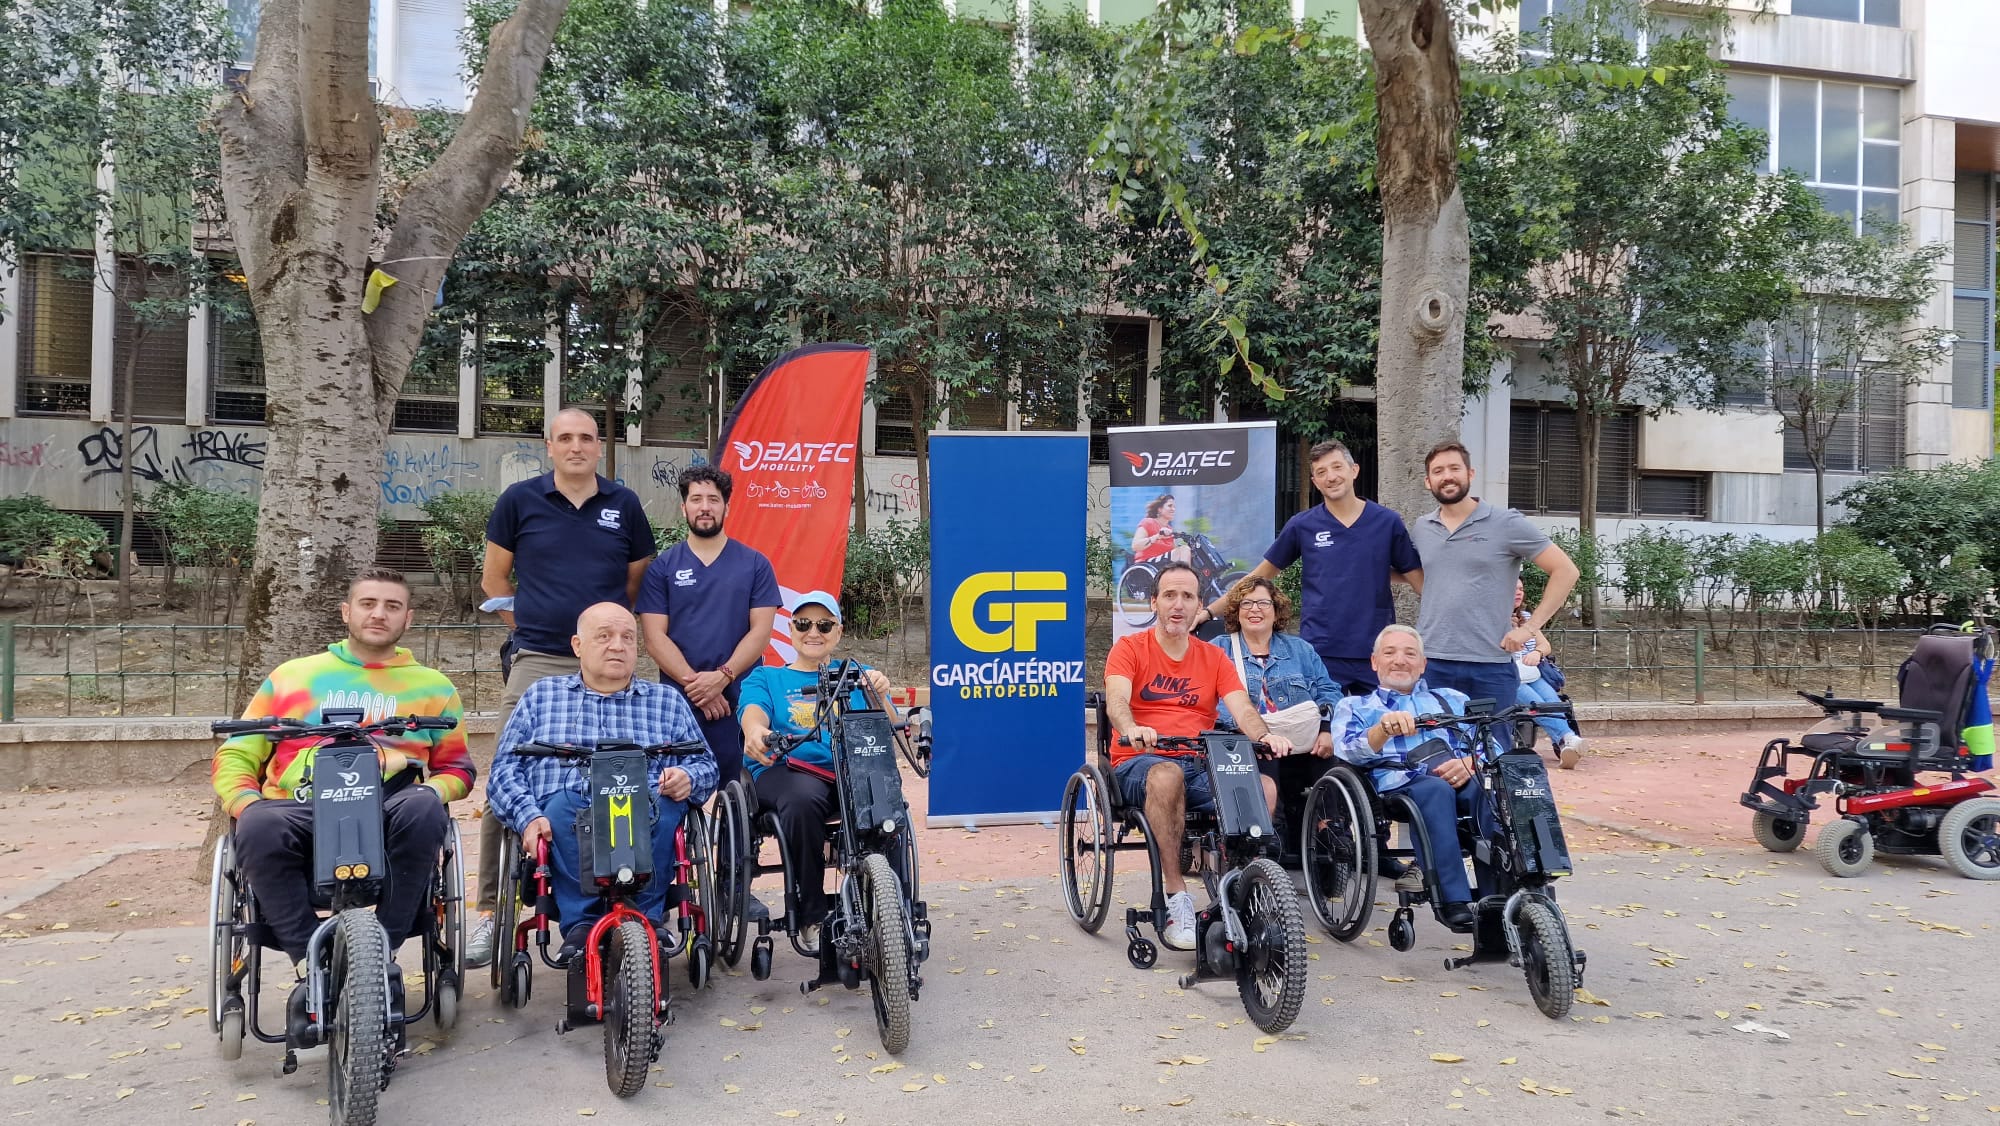 Ortopedia García Férriz servicio oficial Batec Mobility en Linares (Jaén)